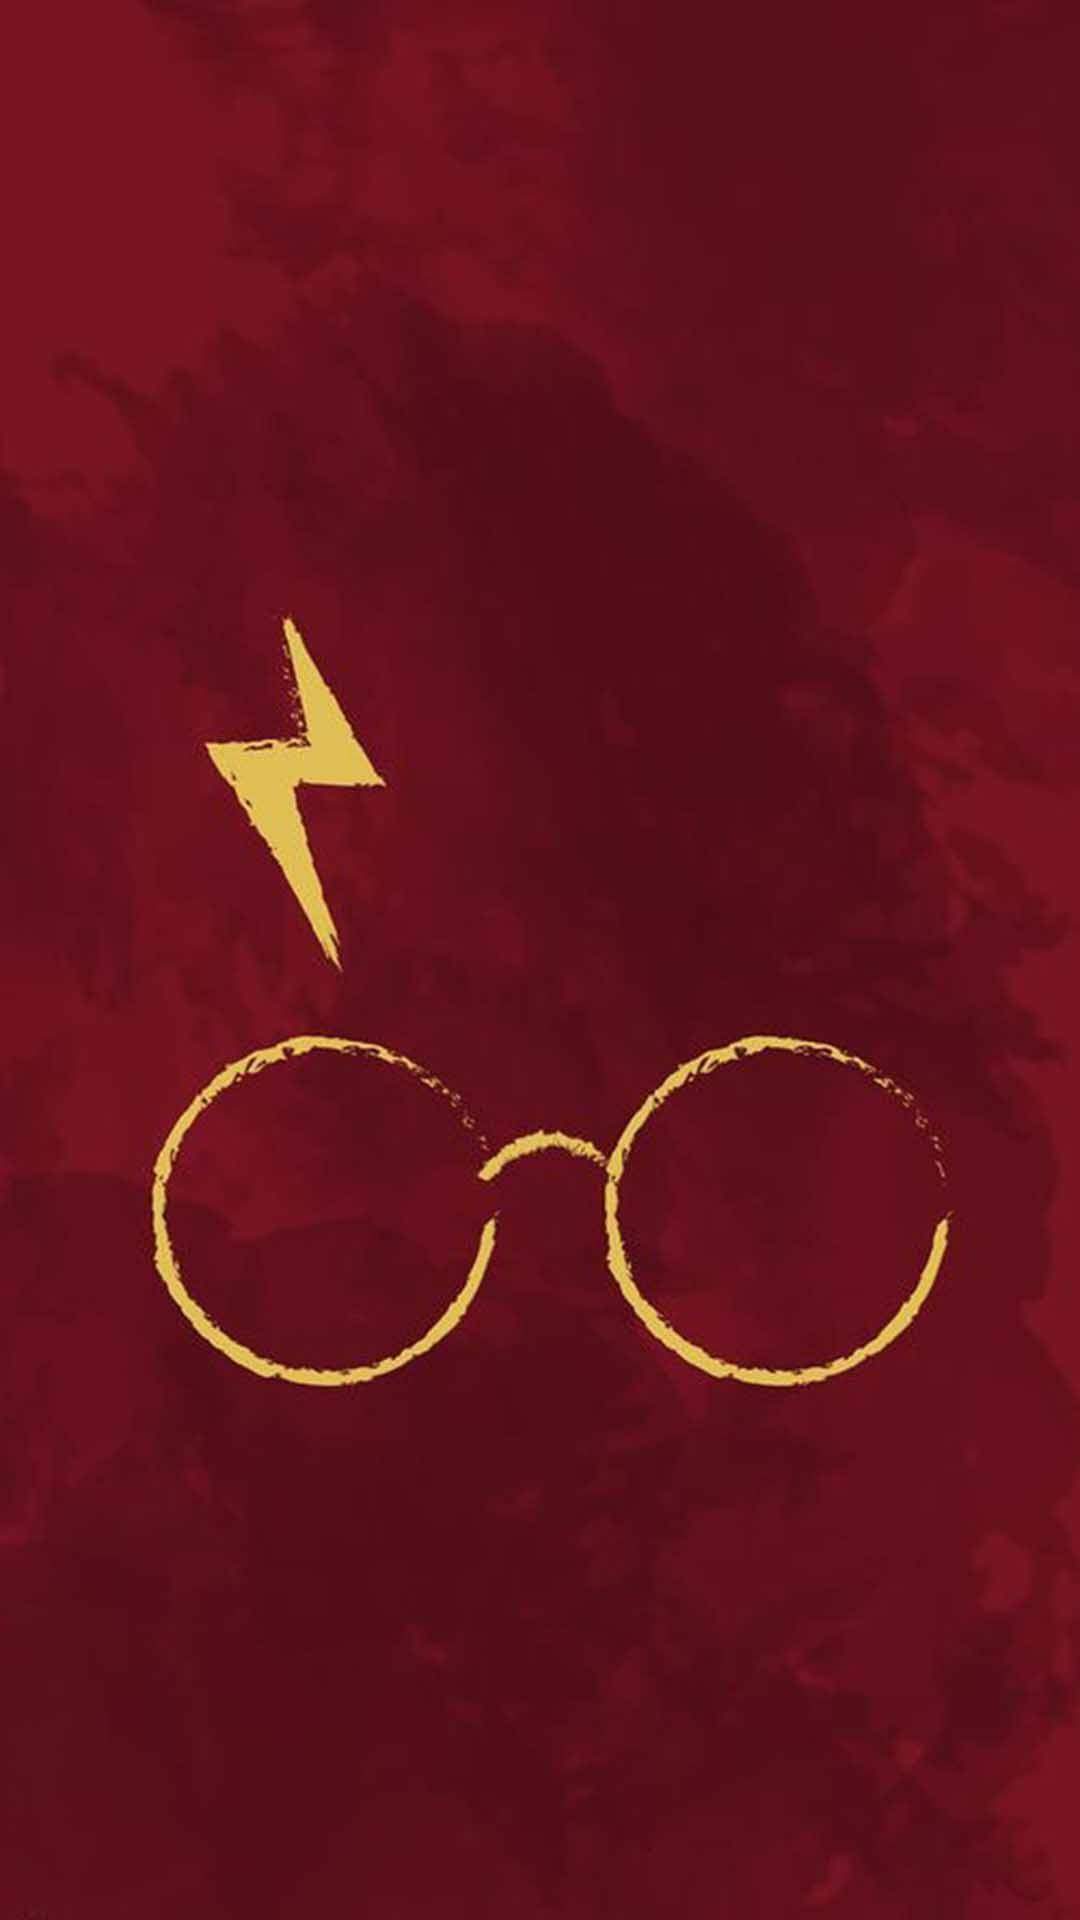 Background Harry Potter Wallpaper - EnWallpaper